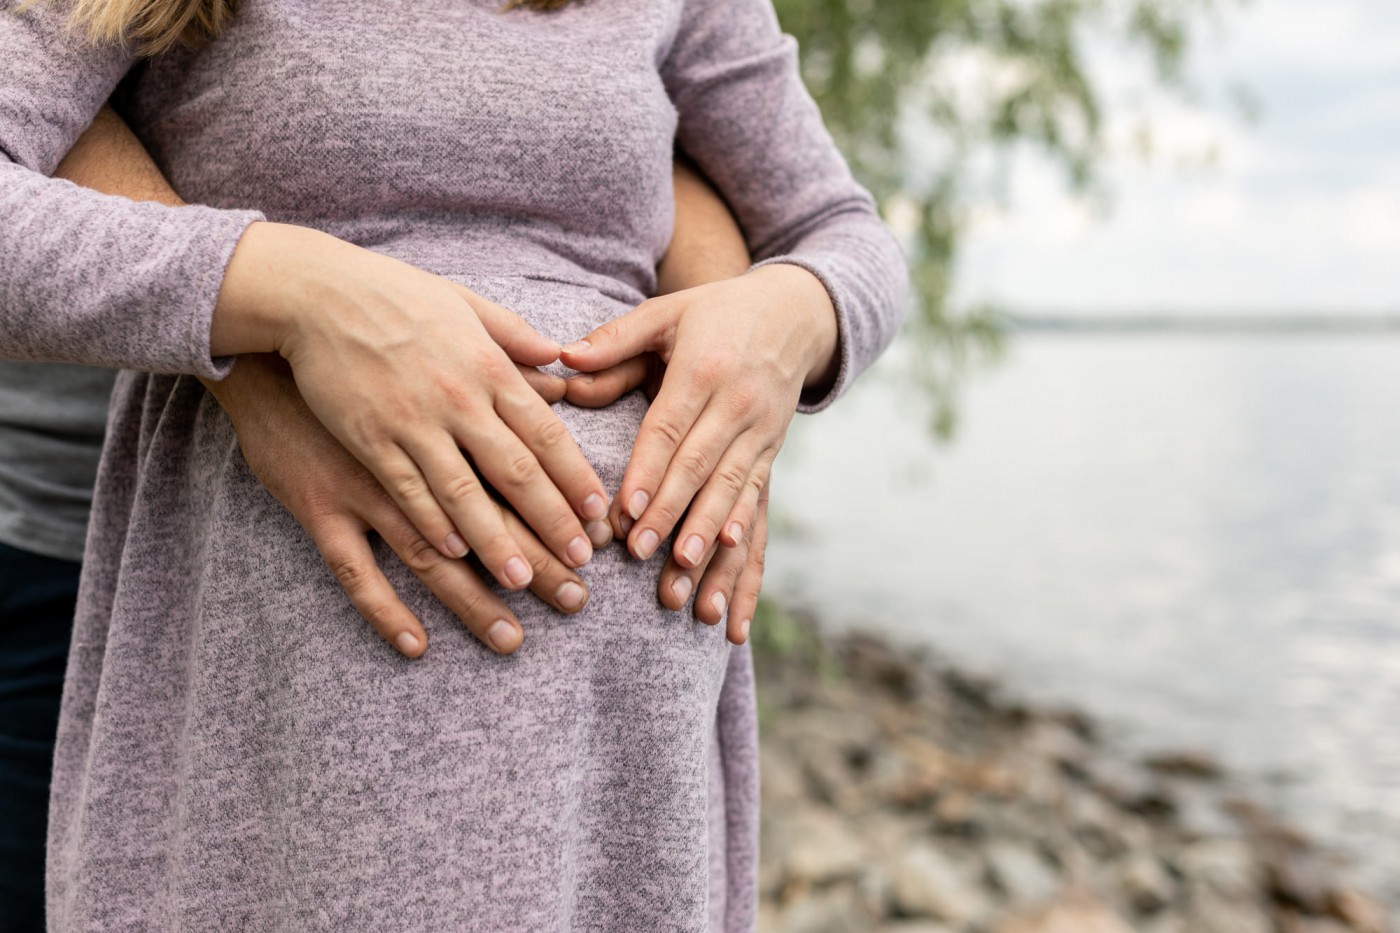 Второй триместр беременности: особенности состояния, что нужно знать женщине